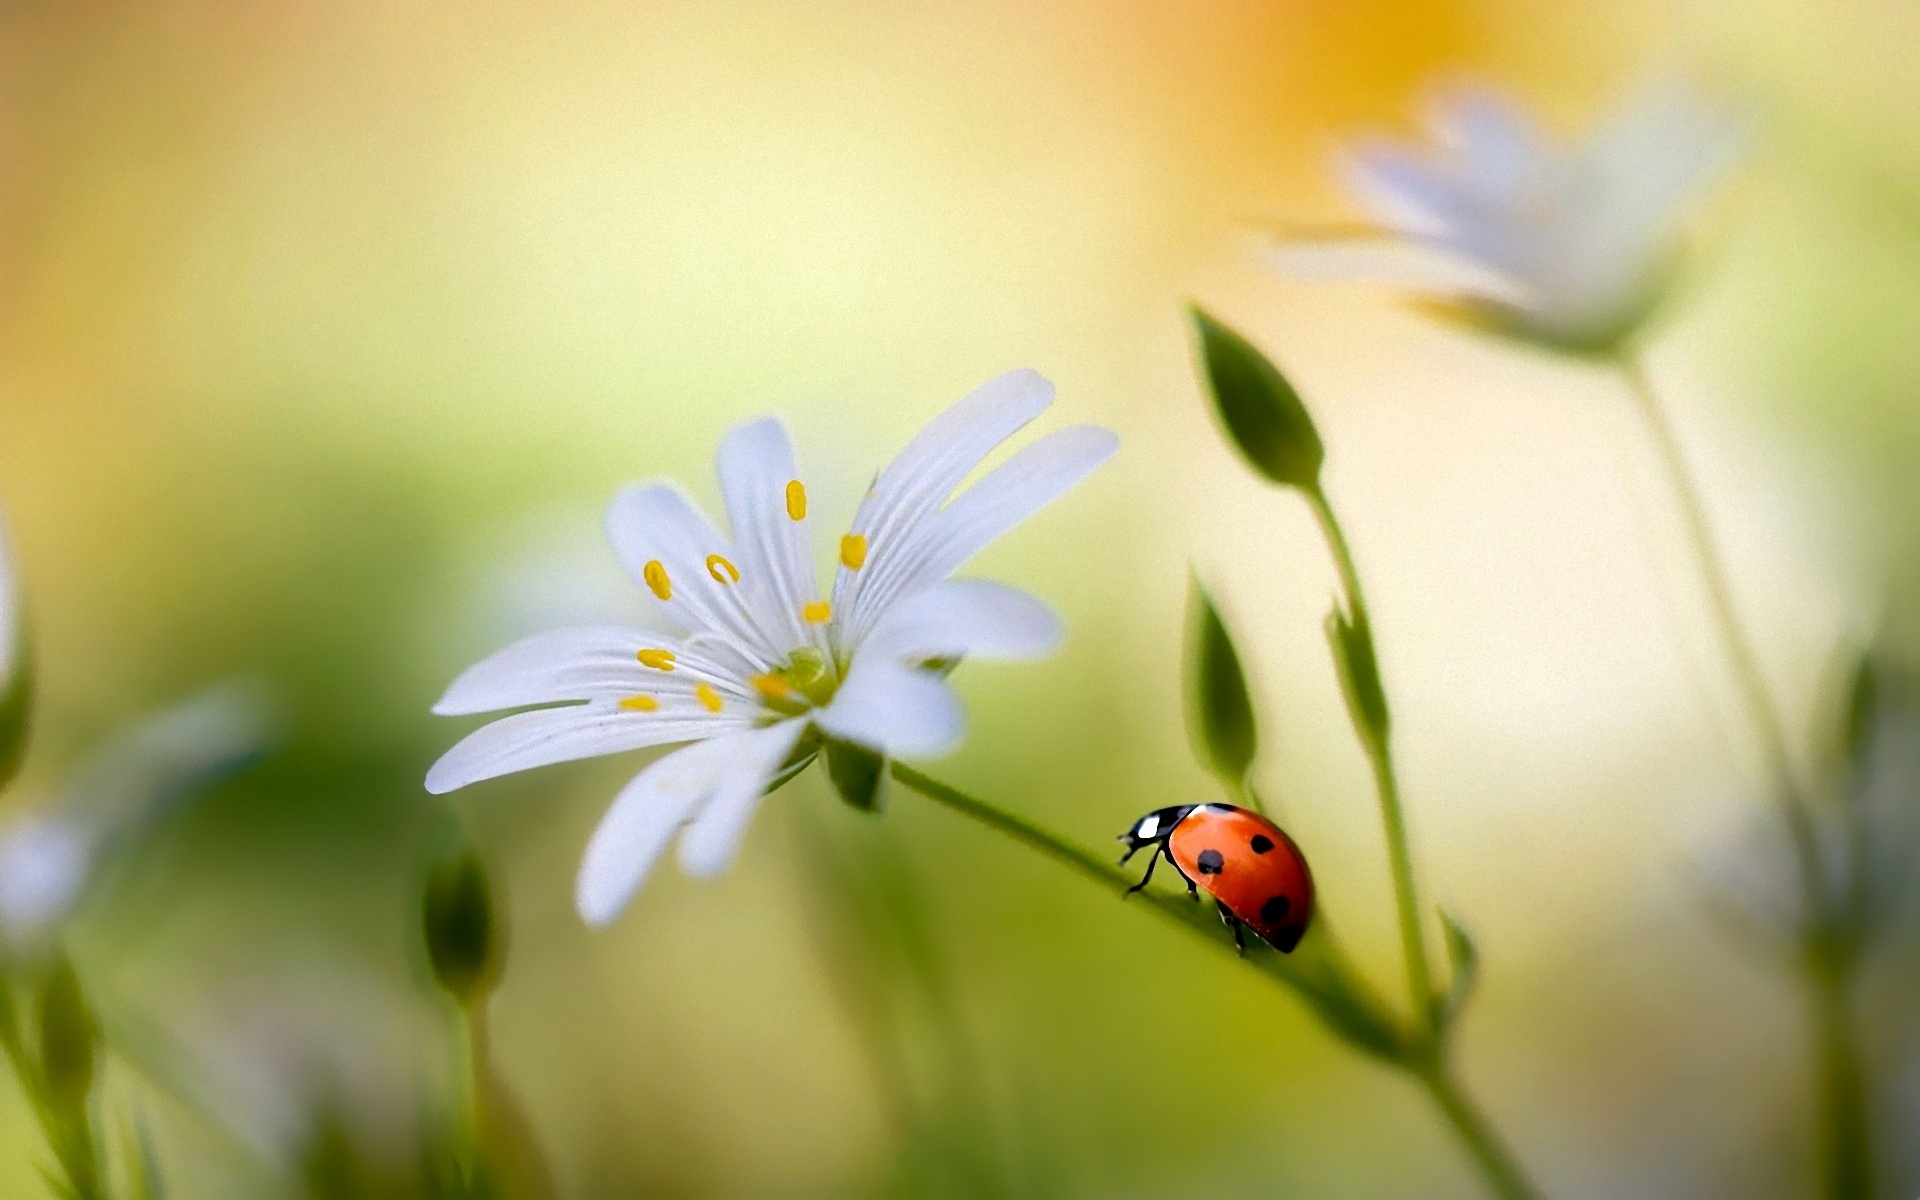 Ladybug On Flower #6905400